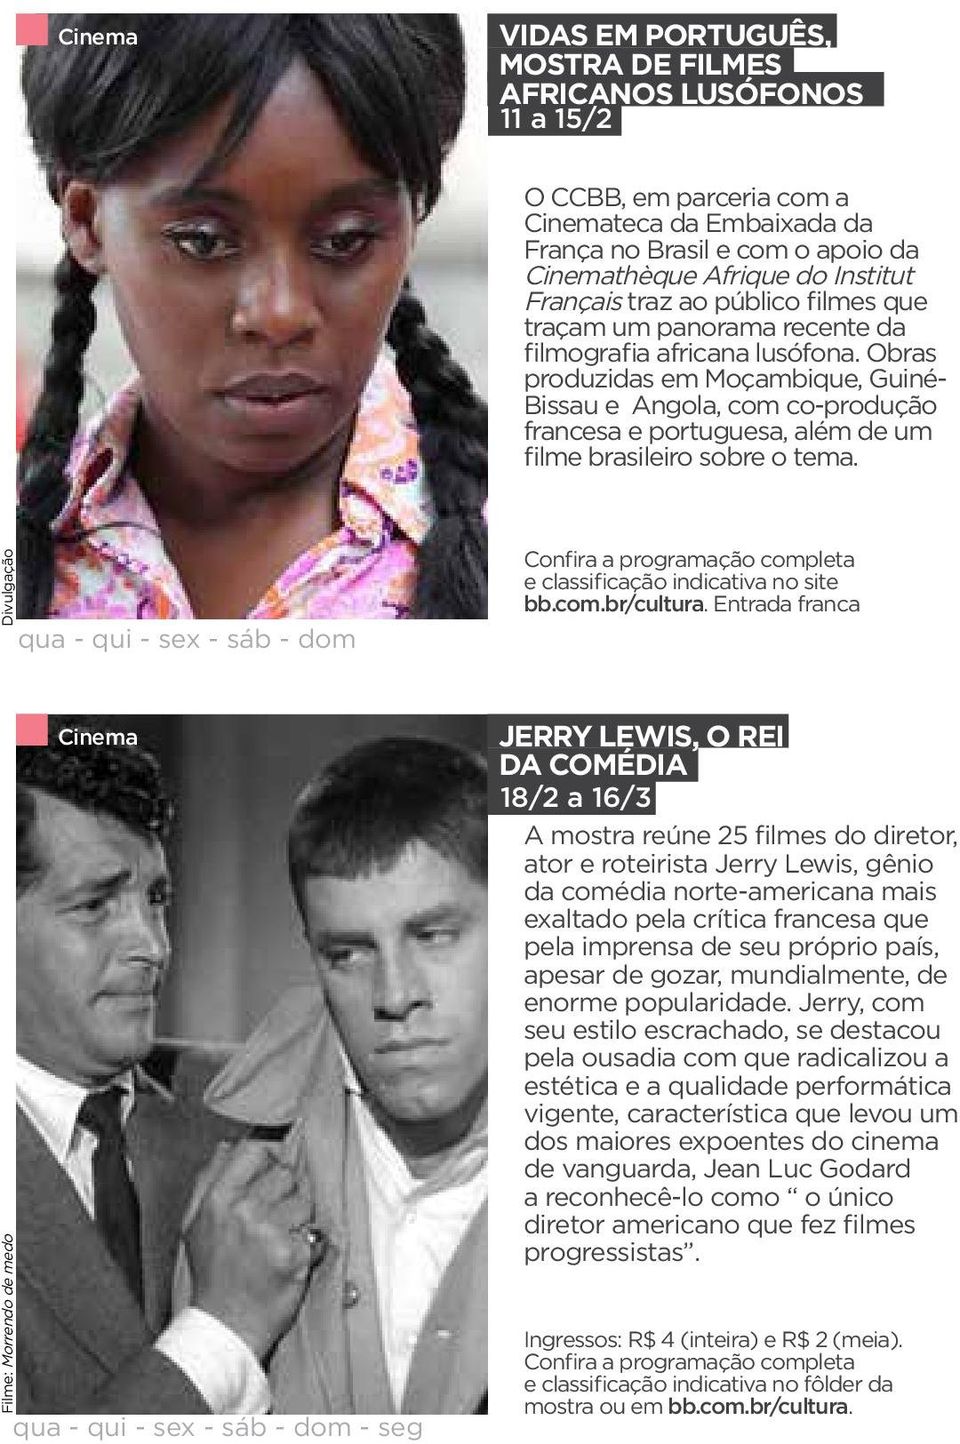 Obras produzidas em Moçambique, Guiné- Bissau e Angola, com co-produção francesa e portuguesa, além de um filme brasileiro sobre o tema.